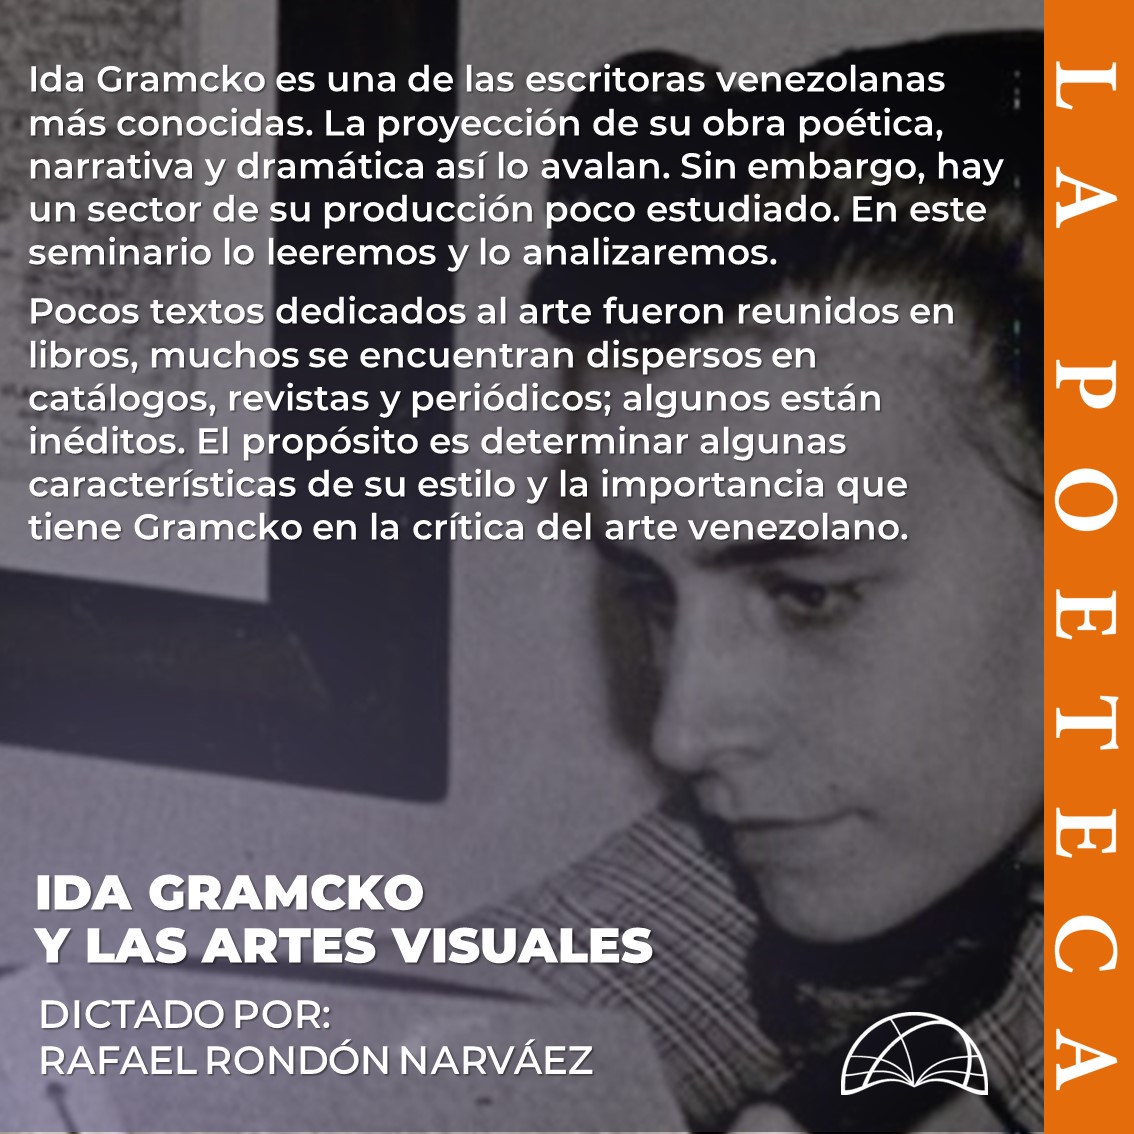 ¿Conoces la importancia de Ida Gramcko en la crítica del arte venezolano? El profesor Rafael Rondón Narváez (@rondonnarvaez) dictará el seminario Ida Gramcko y las artes visuales. Dos sesiones para leer y analizar los textos dedicados al arte por esta escritora venezolana.